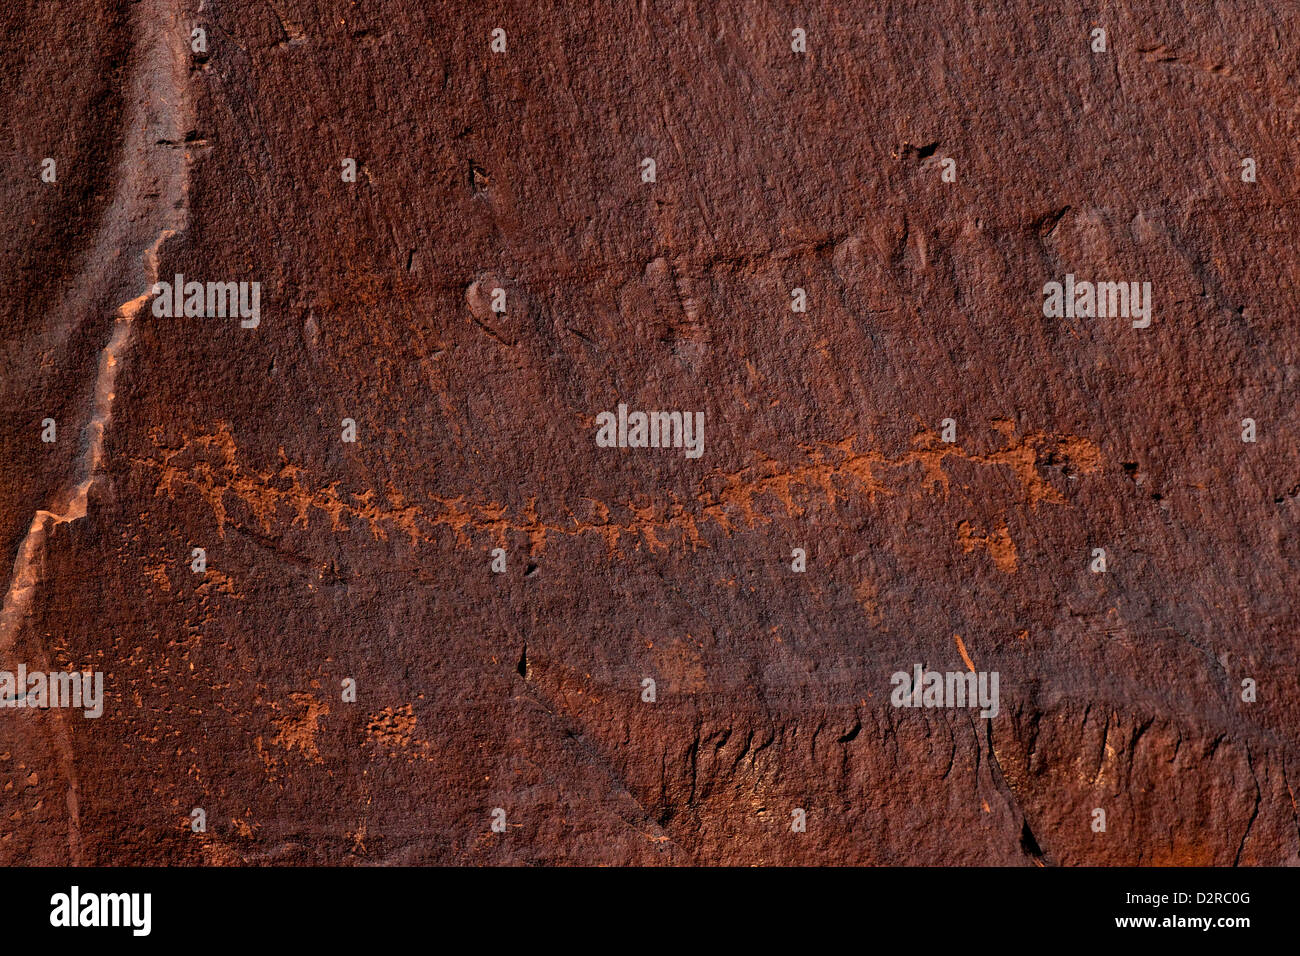 Poupée en papier découpé, période formative pétroglyphes, Utah Scenic Byway 279, Route de la potasse, les sites d'art rupestre, Moab, Utah, USA Banque D'Images